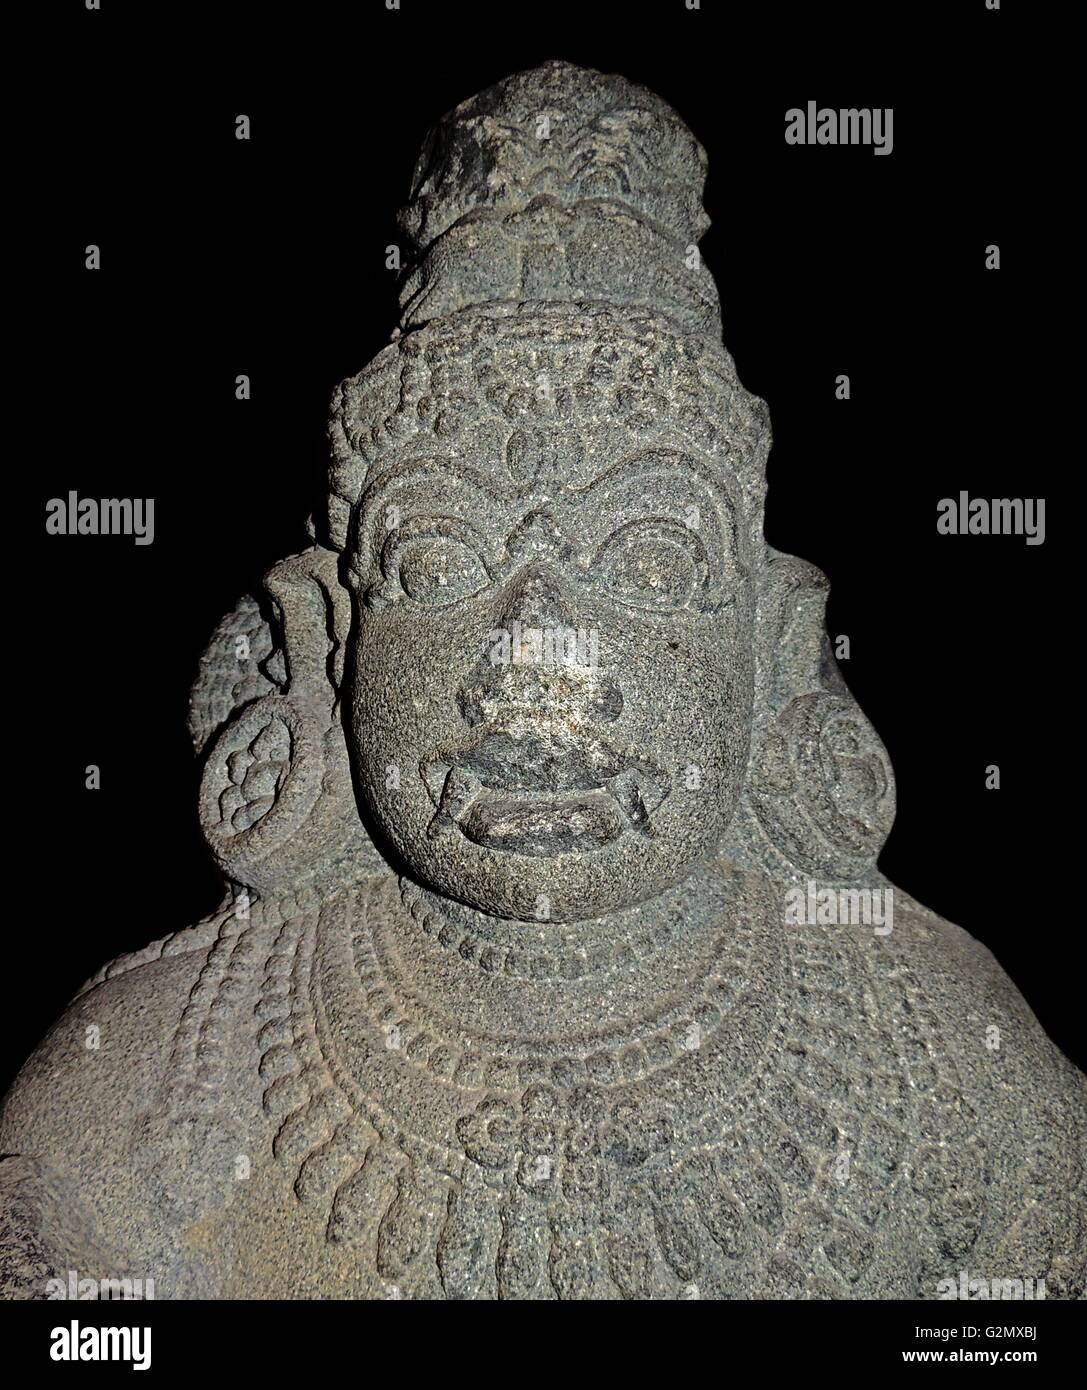 La figure de granit d'un dvarapala du Tamil Nadu, Inde du sud, la dynastie Chola, 12e siècle. Gardien de la porte d'un temple hindou. Le temple hindou est un espace sacré, un divin accueil pour les dieux lorsqu'il est appelé par leurs disciples. À la plupart des temples, sculptures de divinités et d'autres chiffres sont des endroits sur les murs extérieurs, dans des créneaux bien définis ou autour des portes. Ils apparaissent habituellement dans les paires de chaque côté de la porte, vers l'intérieur pour protéger l'enceinte sacrée du temple de forces malveillantes. Banque D'Images